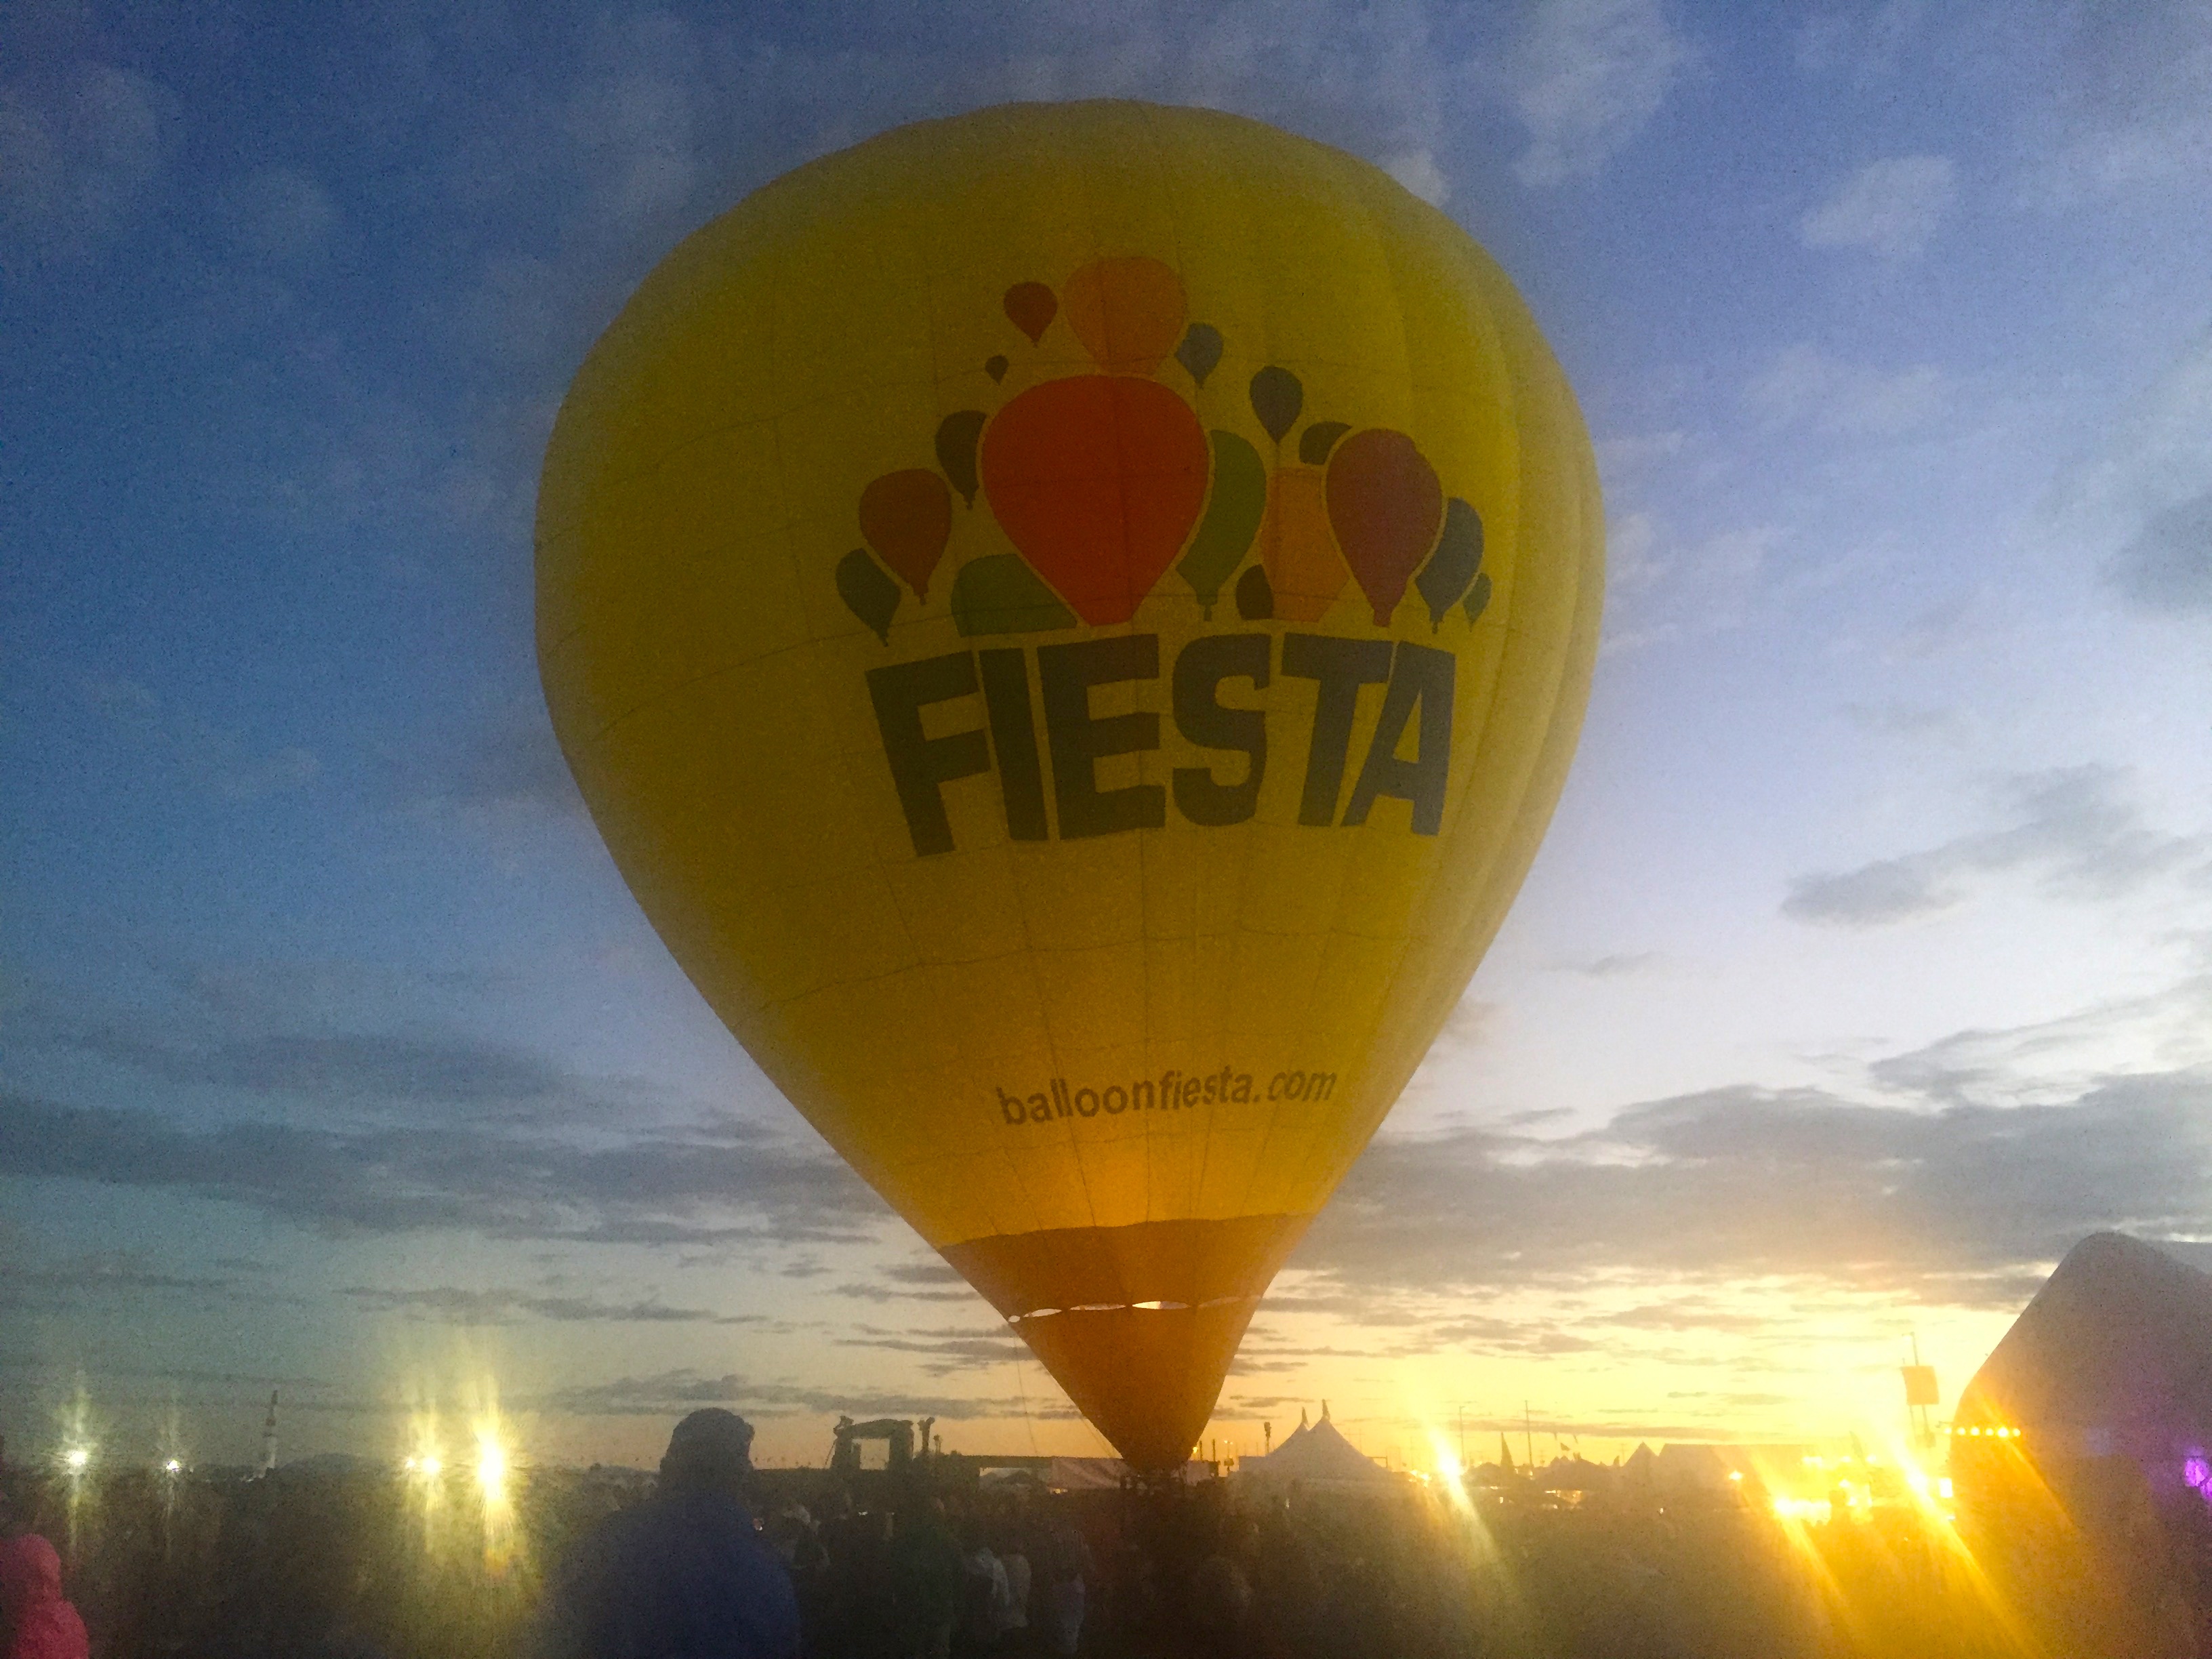 The Balloon Fiesta Balloon